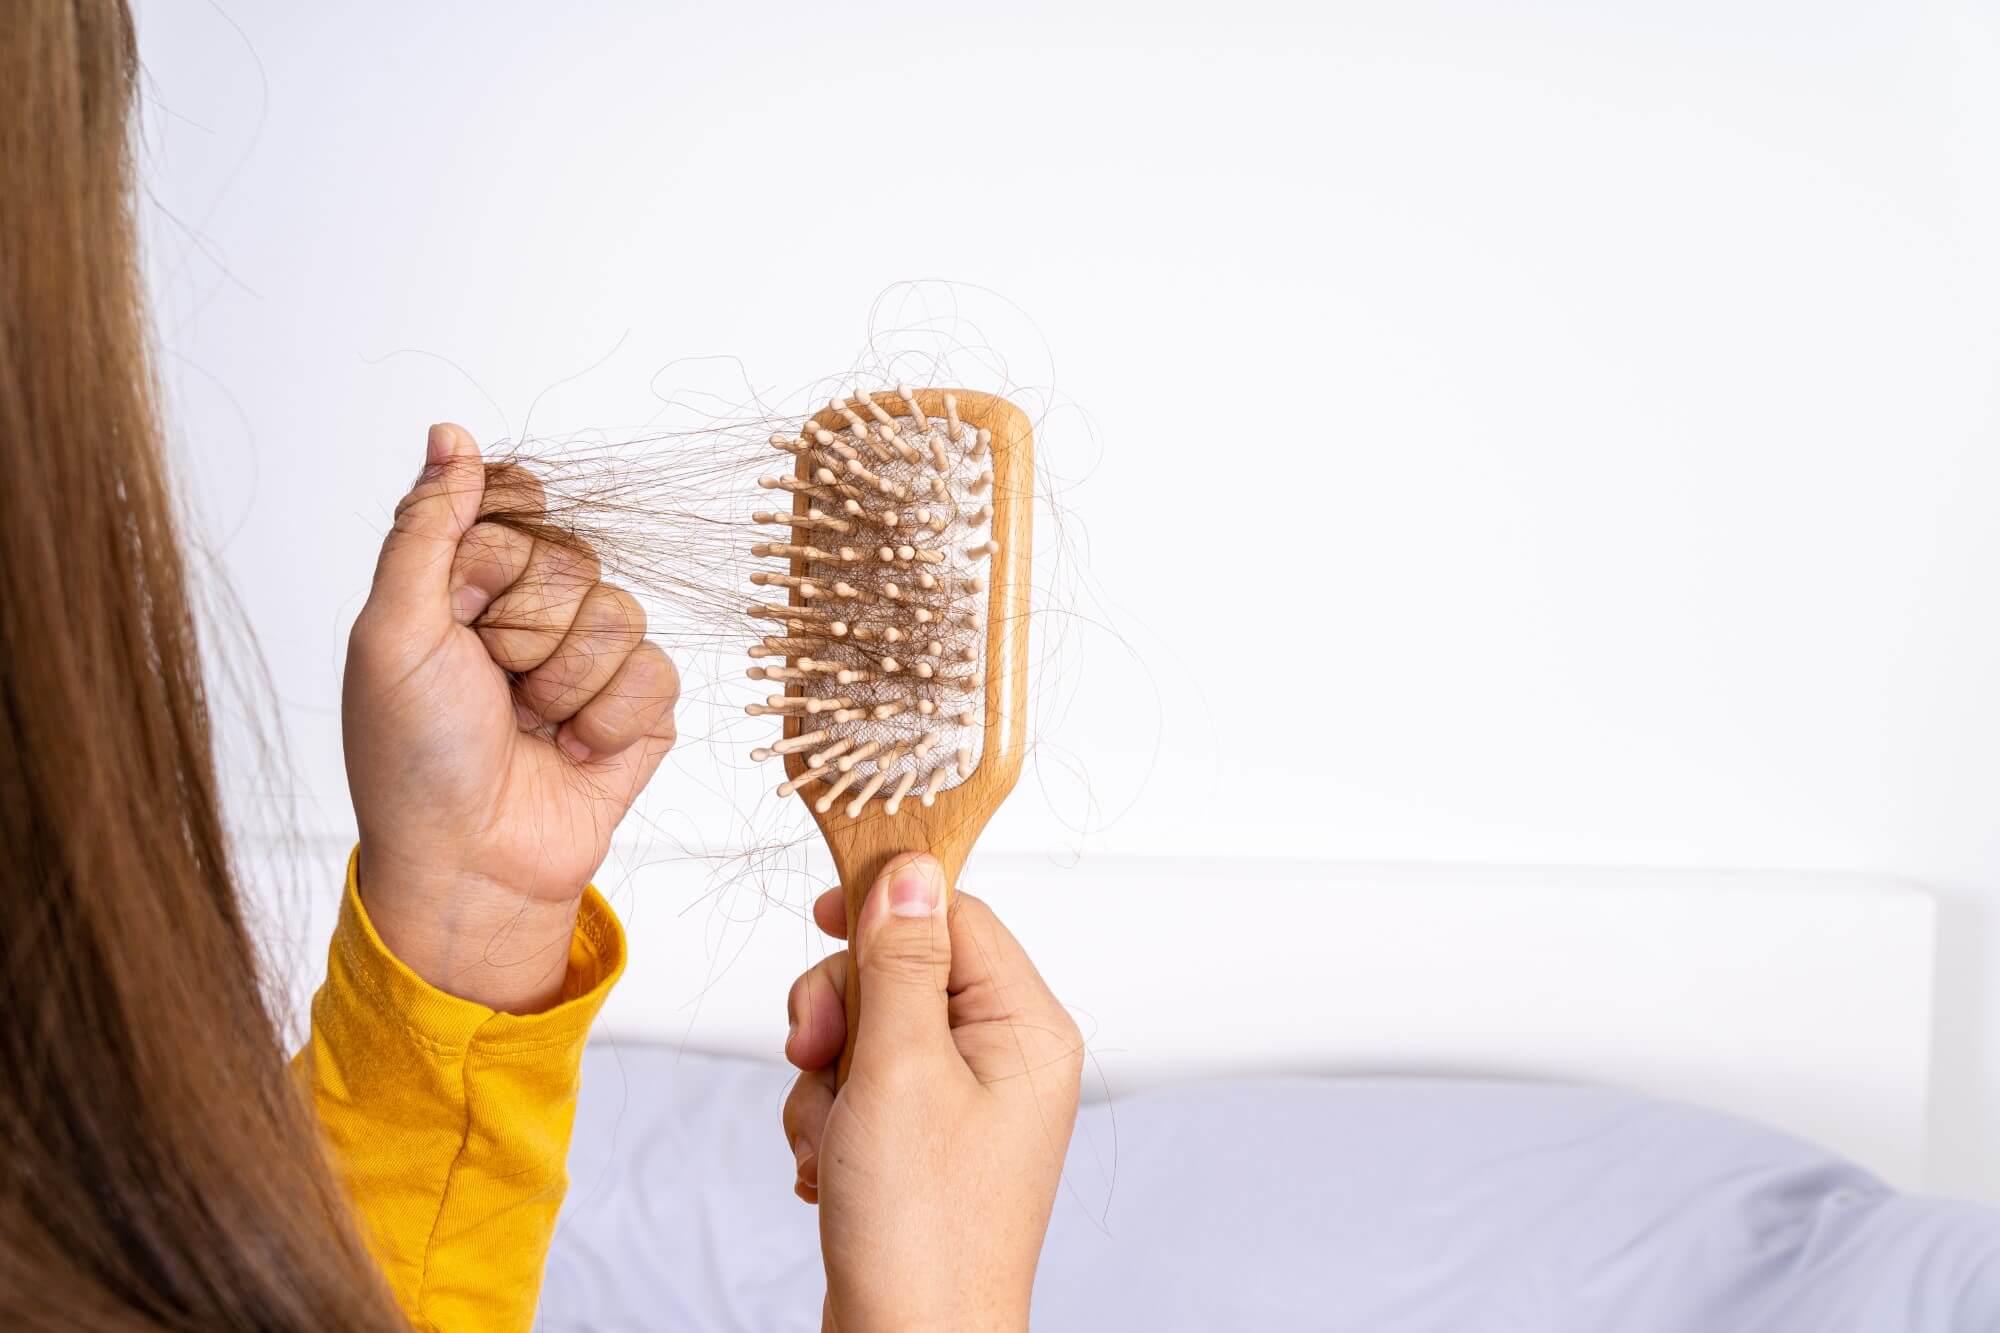 טיפול שורש: האם יש טיפול בנשירת שיער אחרי לידה?